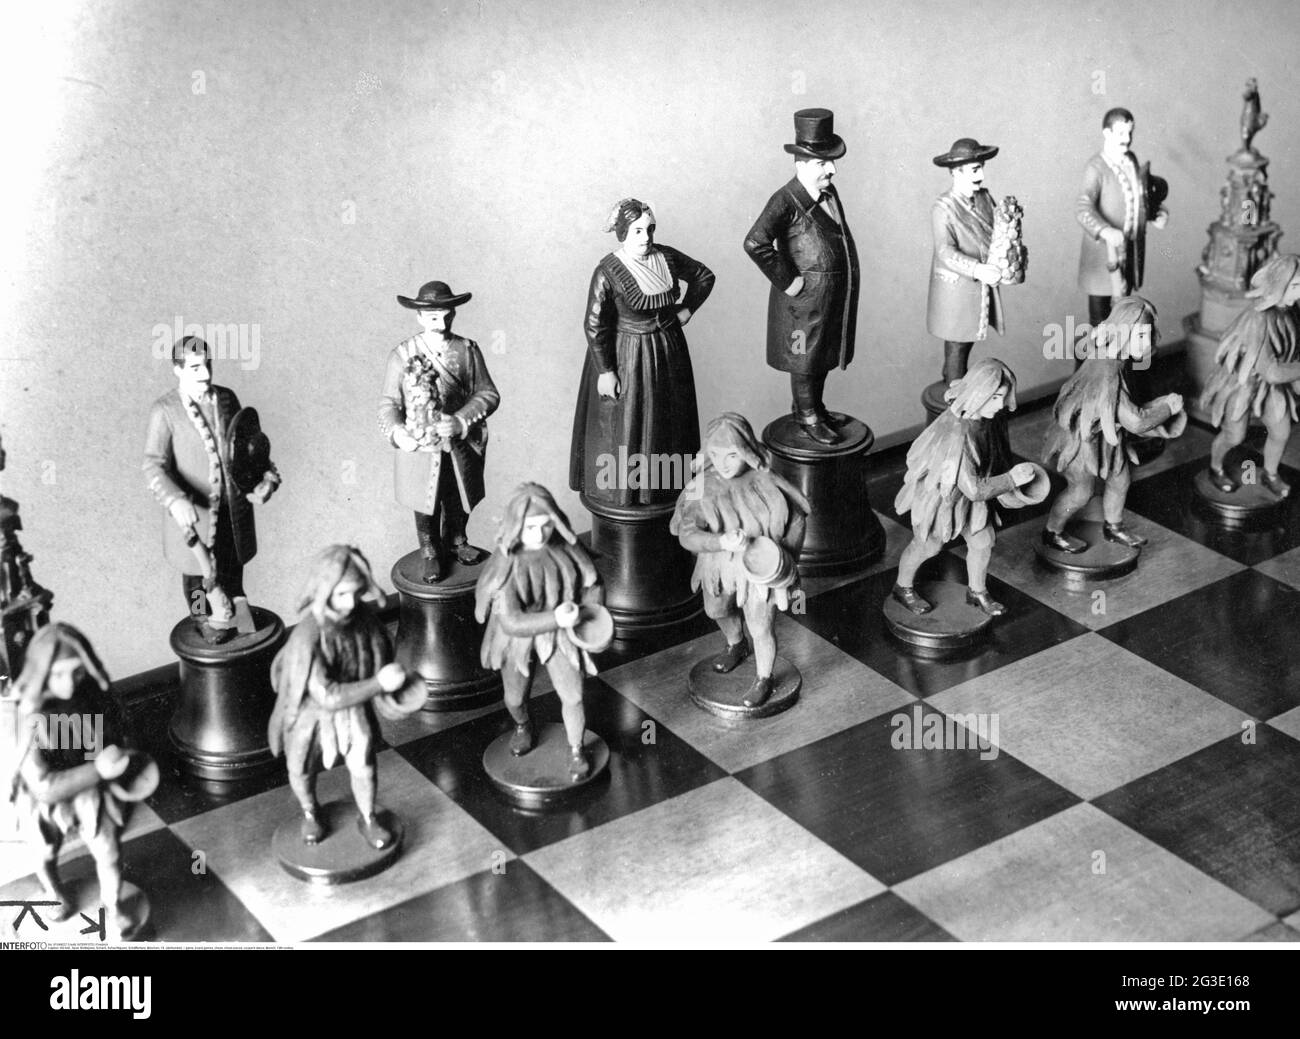 Spiel, Brettspiele, Schach, Schachfiguren, cooper's Dance, München, 19.  Jahrhundert, ZUSÄTZLICHE-RIGHTS-CLEARANCE-INFO-NOT-AVAILABLE  Stockfotografie - Alamy